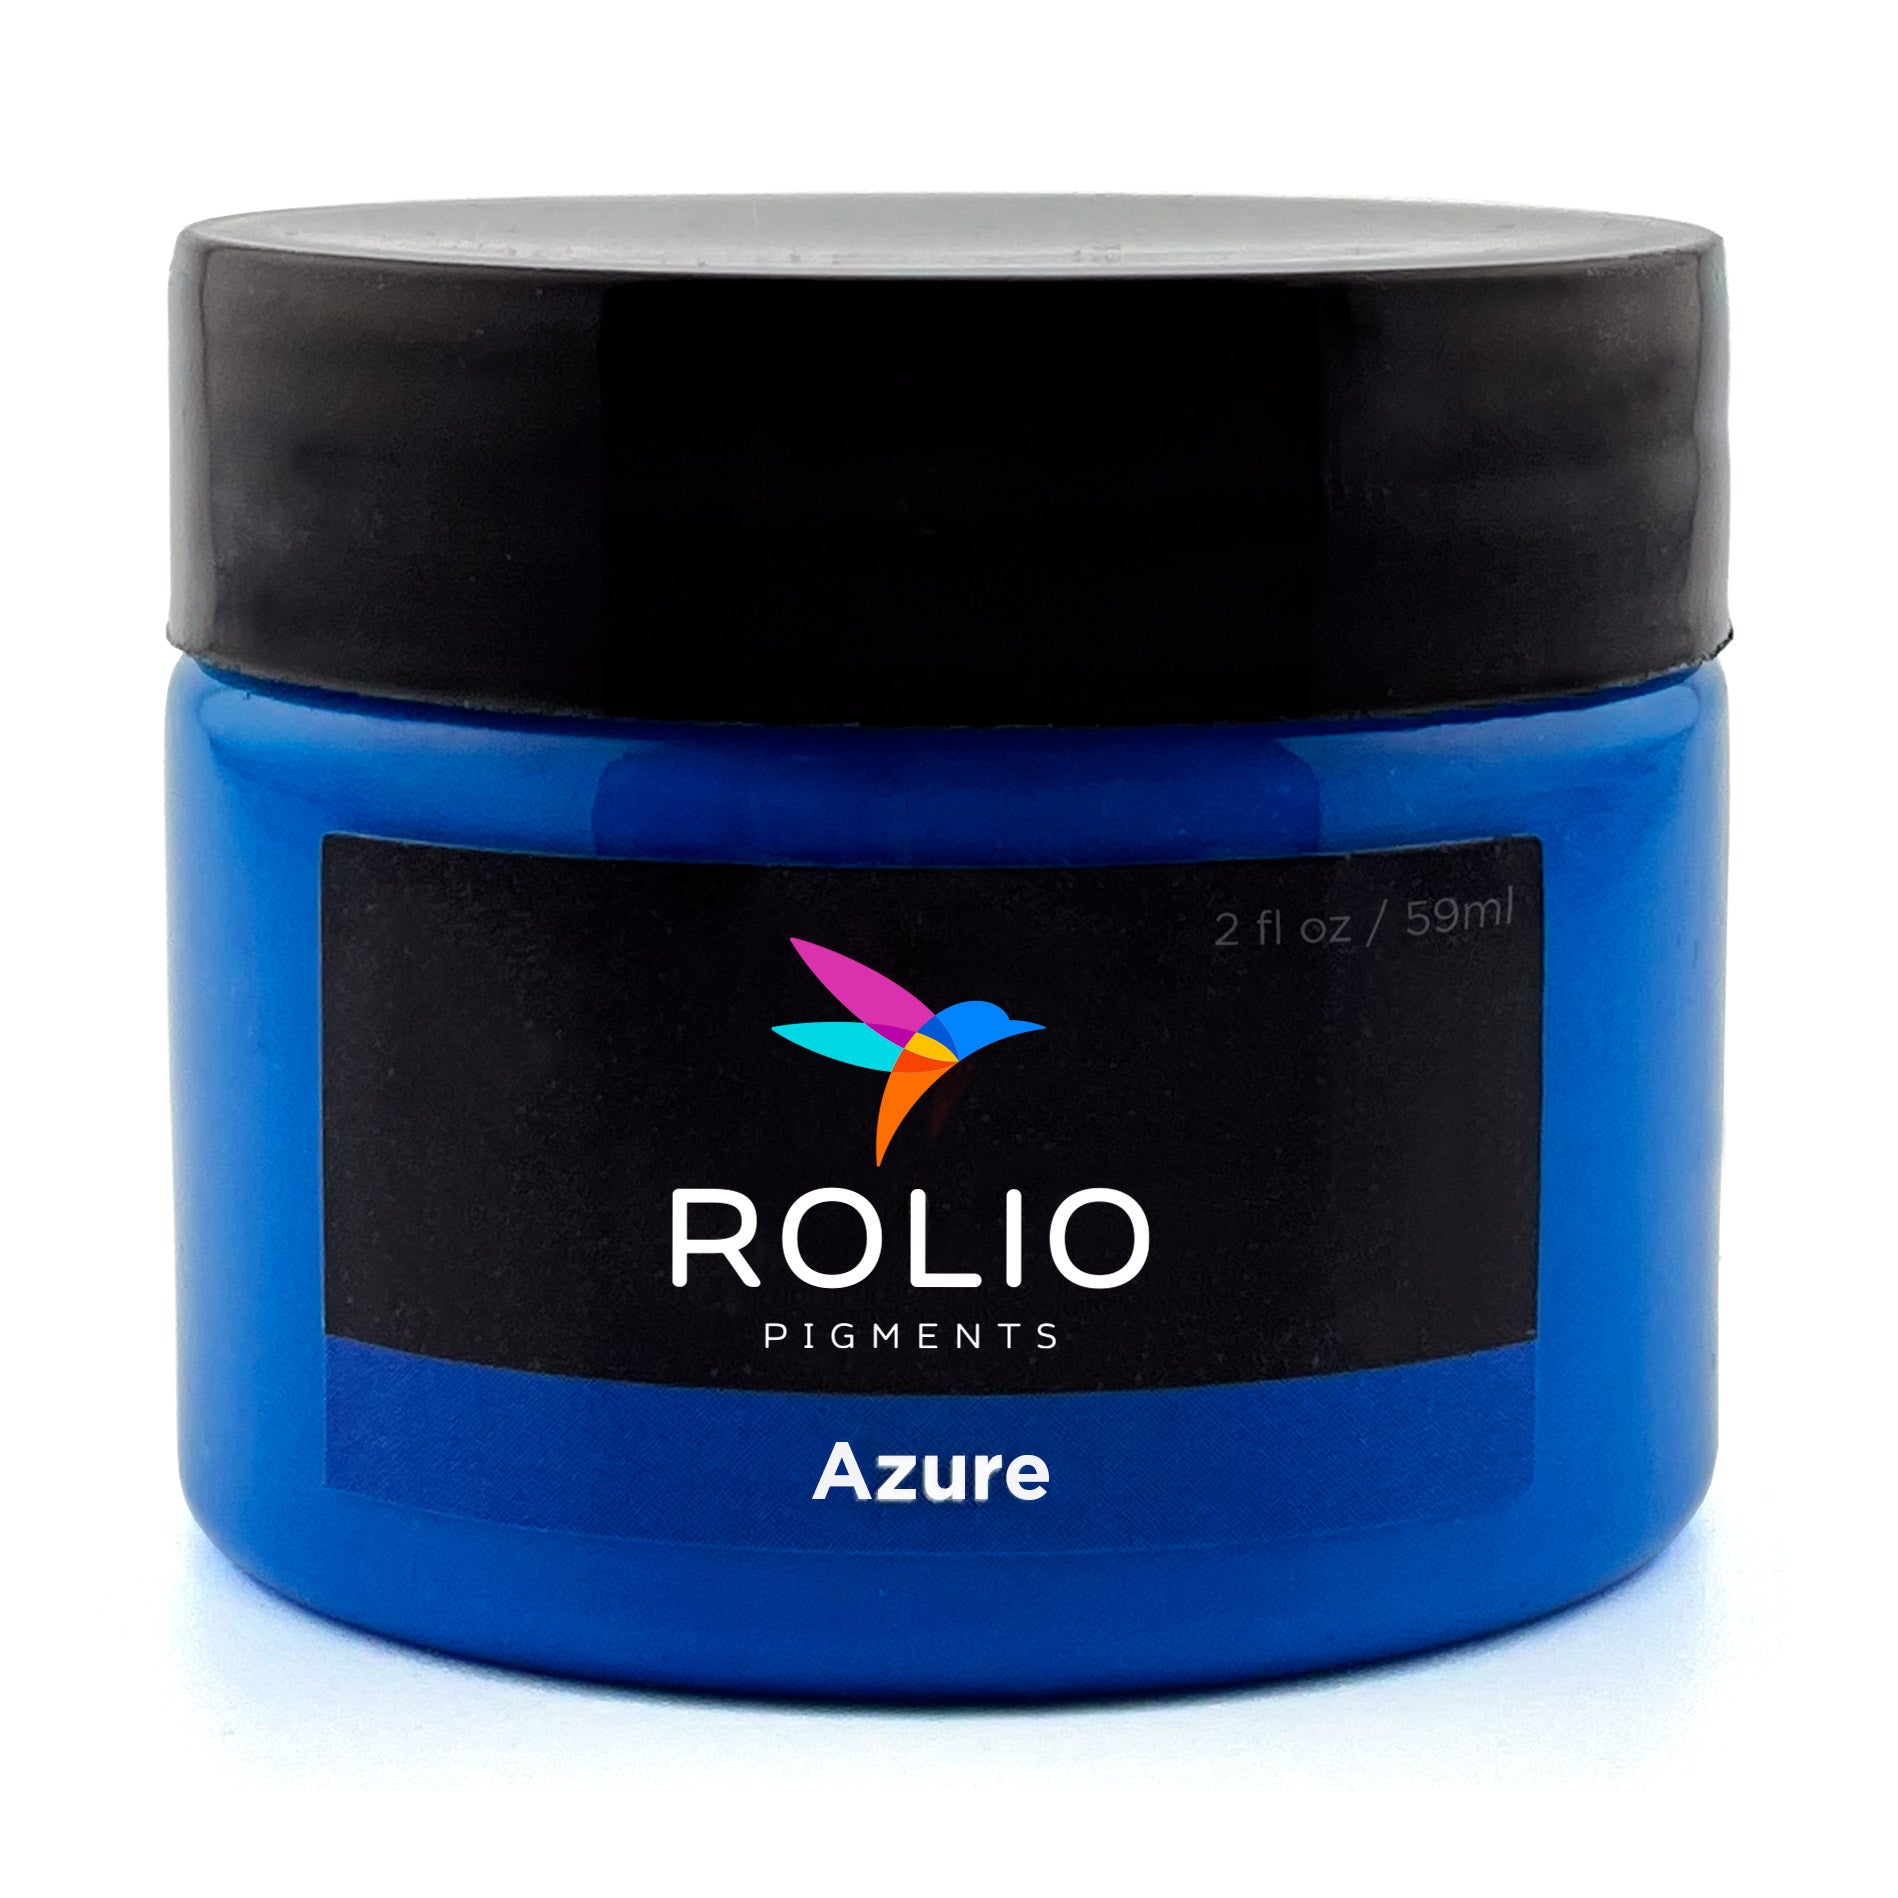 Rolio-Azure-Blue-Pigment-Paste.jpg